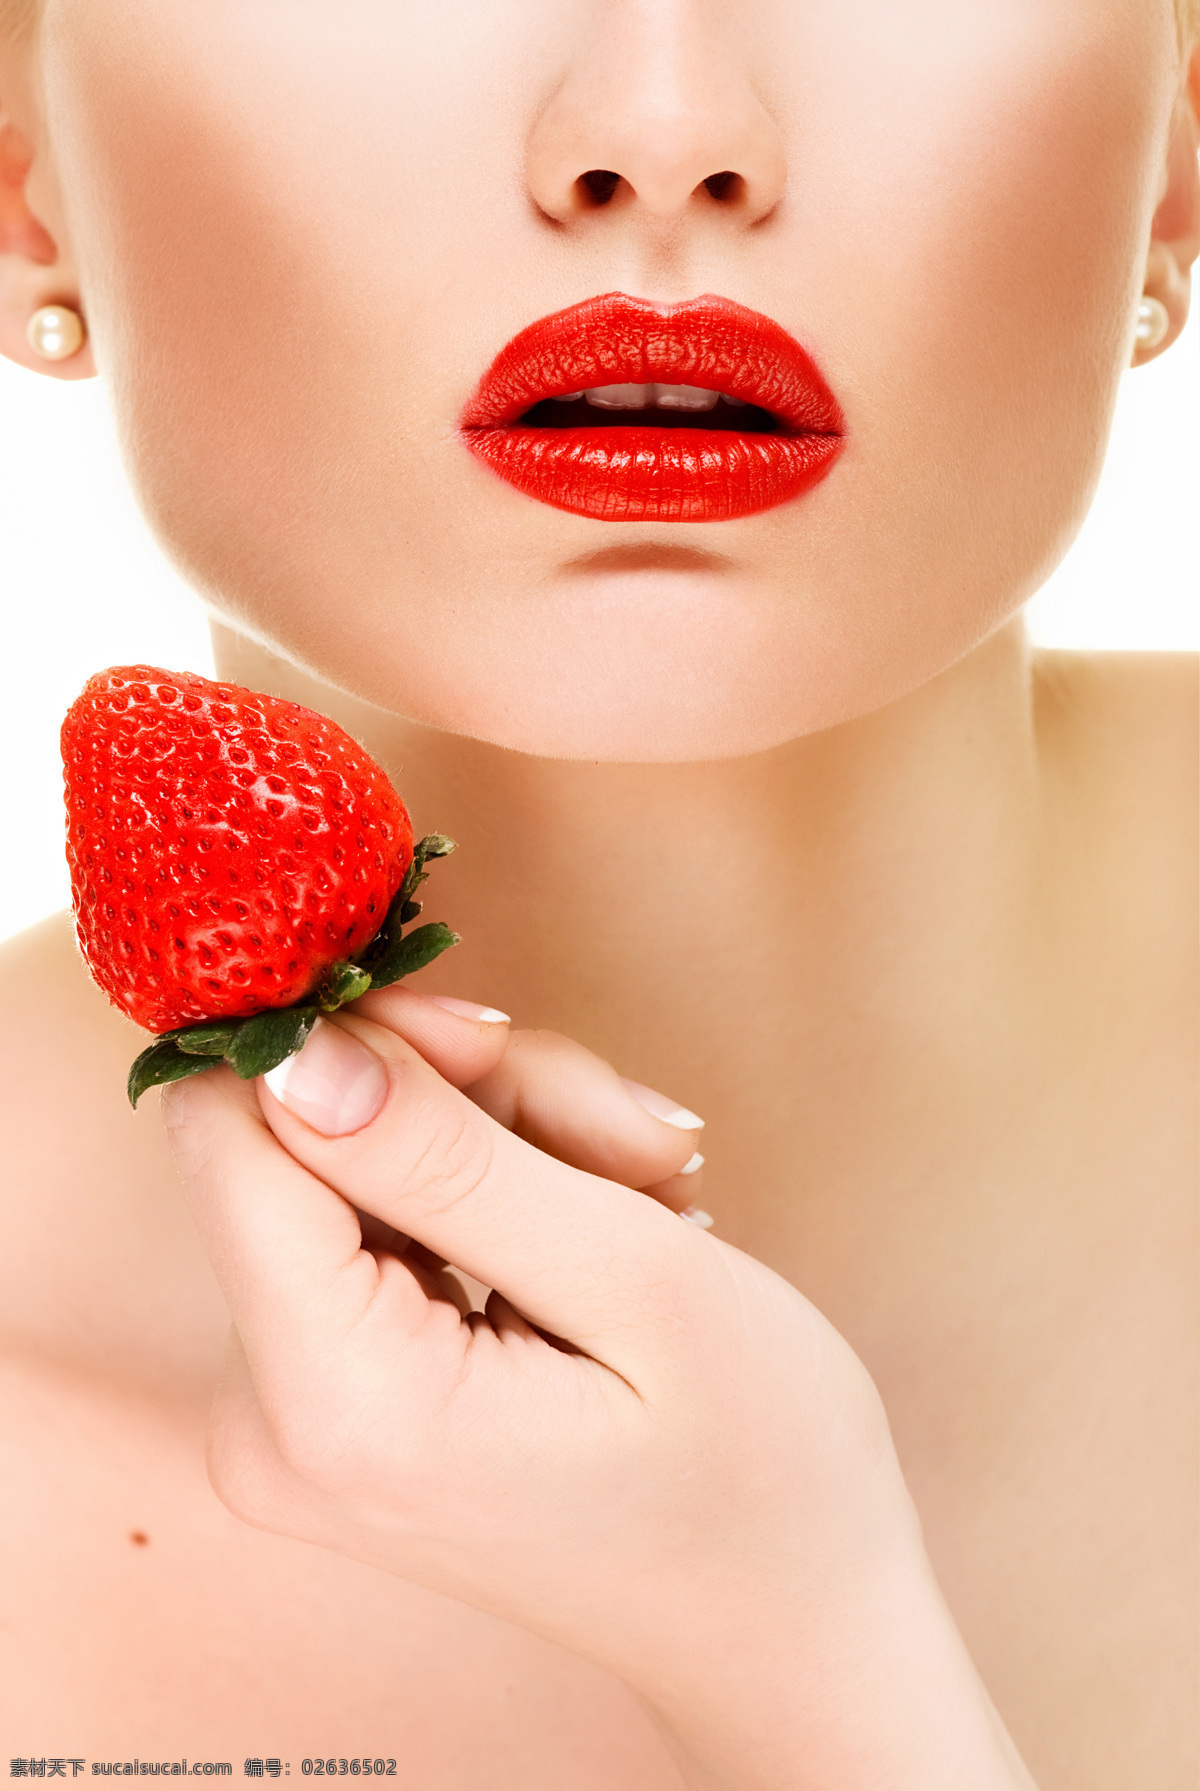 红唇 美女 草莓 摄影图片 性感红唇 水果 高清图片 美女图片 人物图片